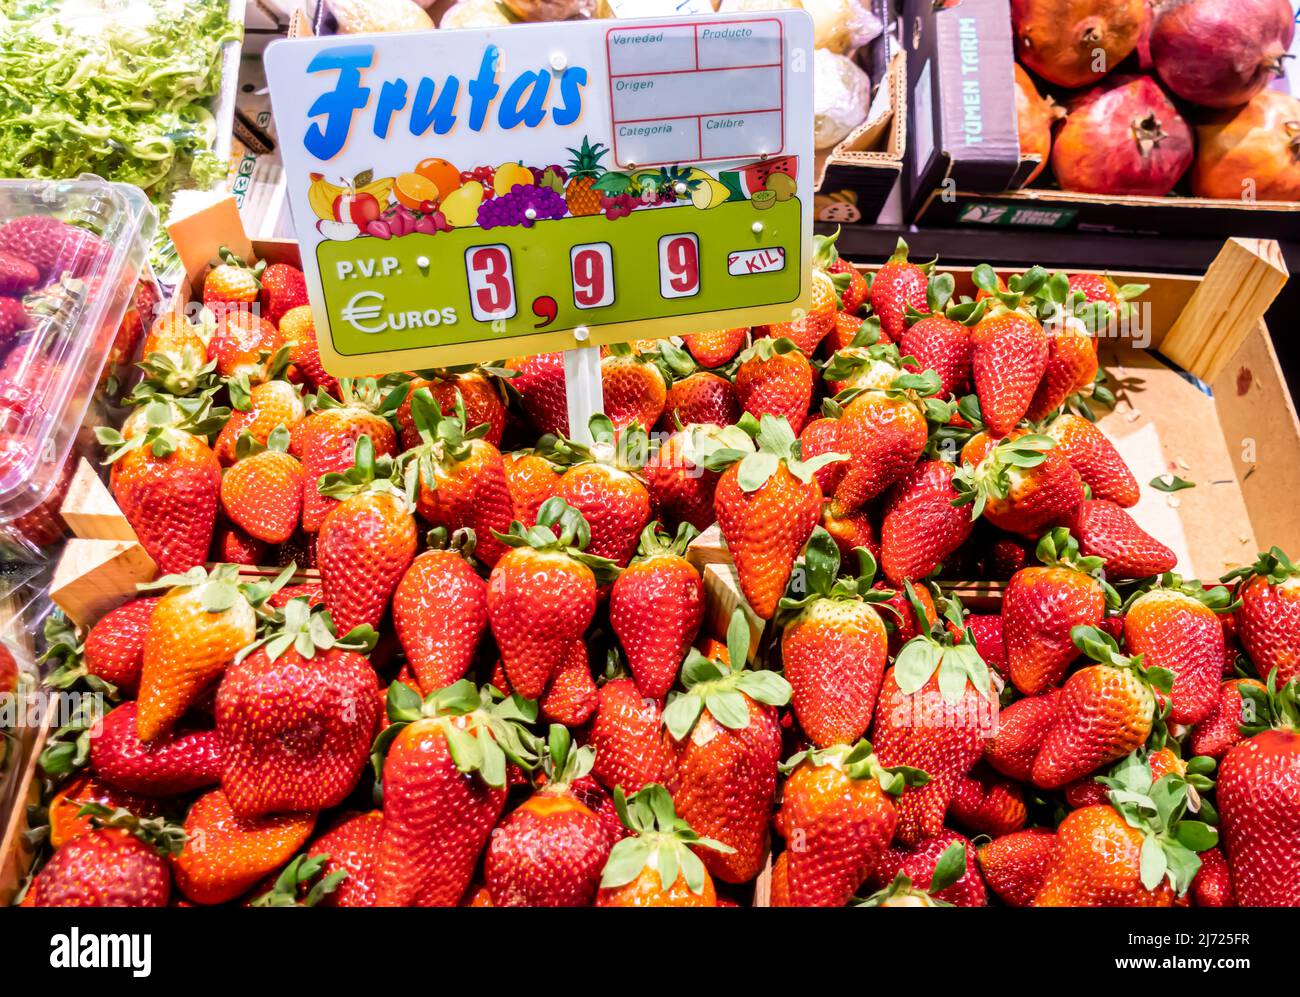 Frutas Erdbeeren Display mit Preisschild für EUR 3,99 Stand im Mercado de Triana, Sevilla, Andalusien, Spanien Stockfoto